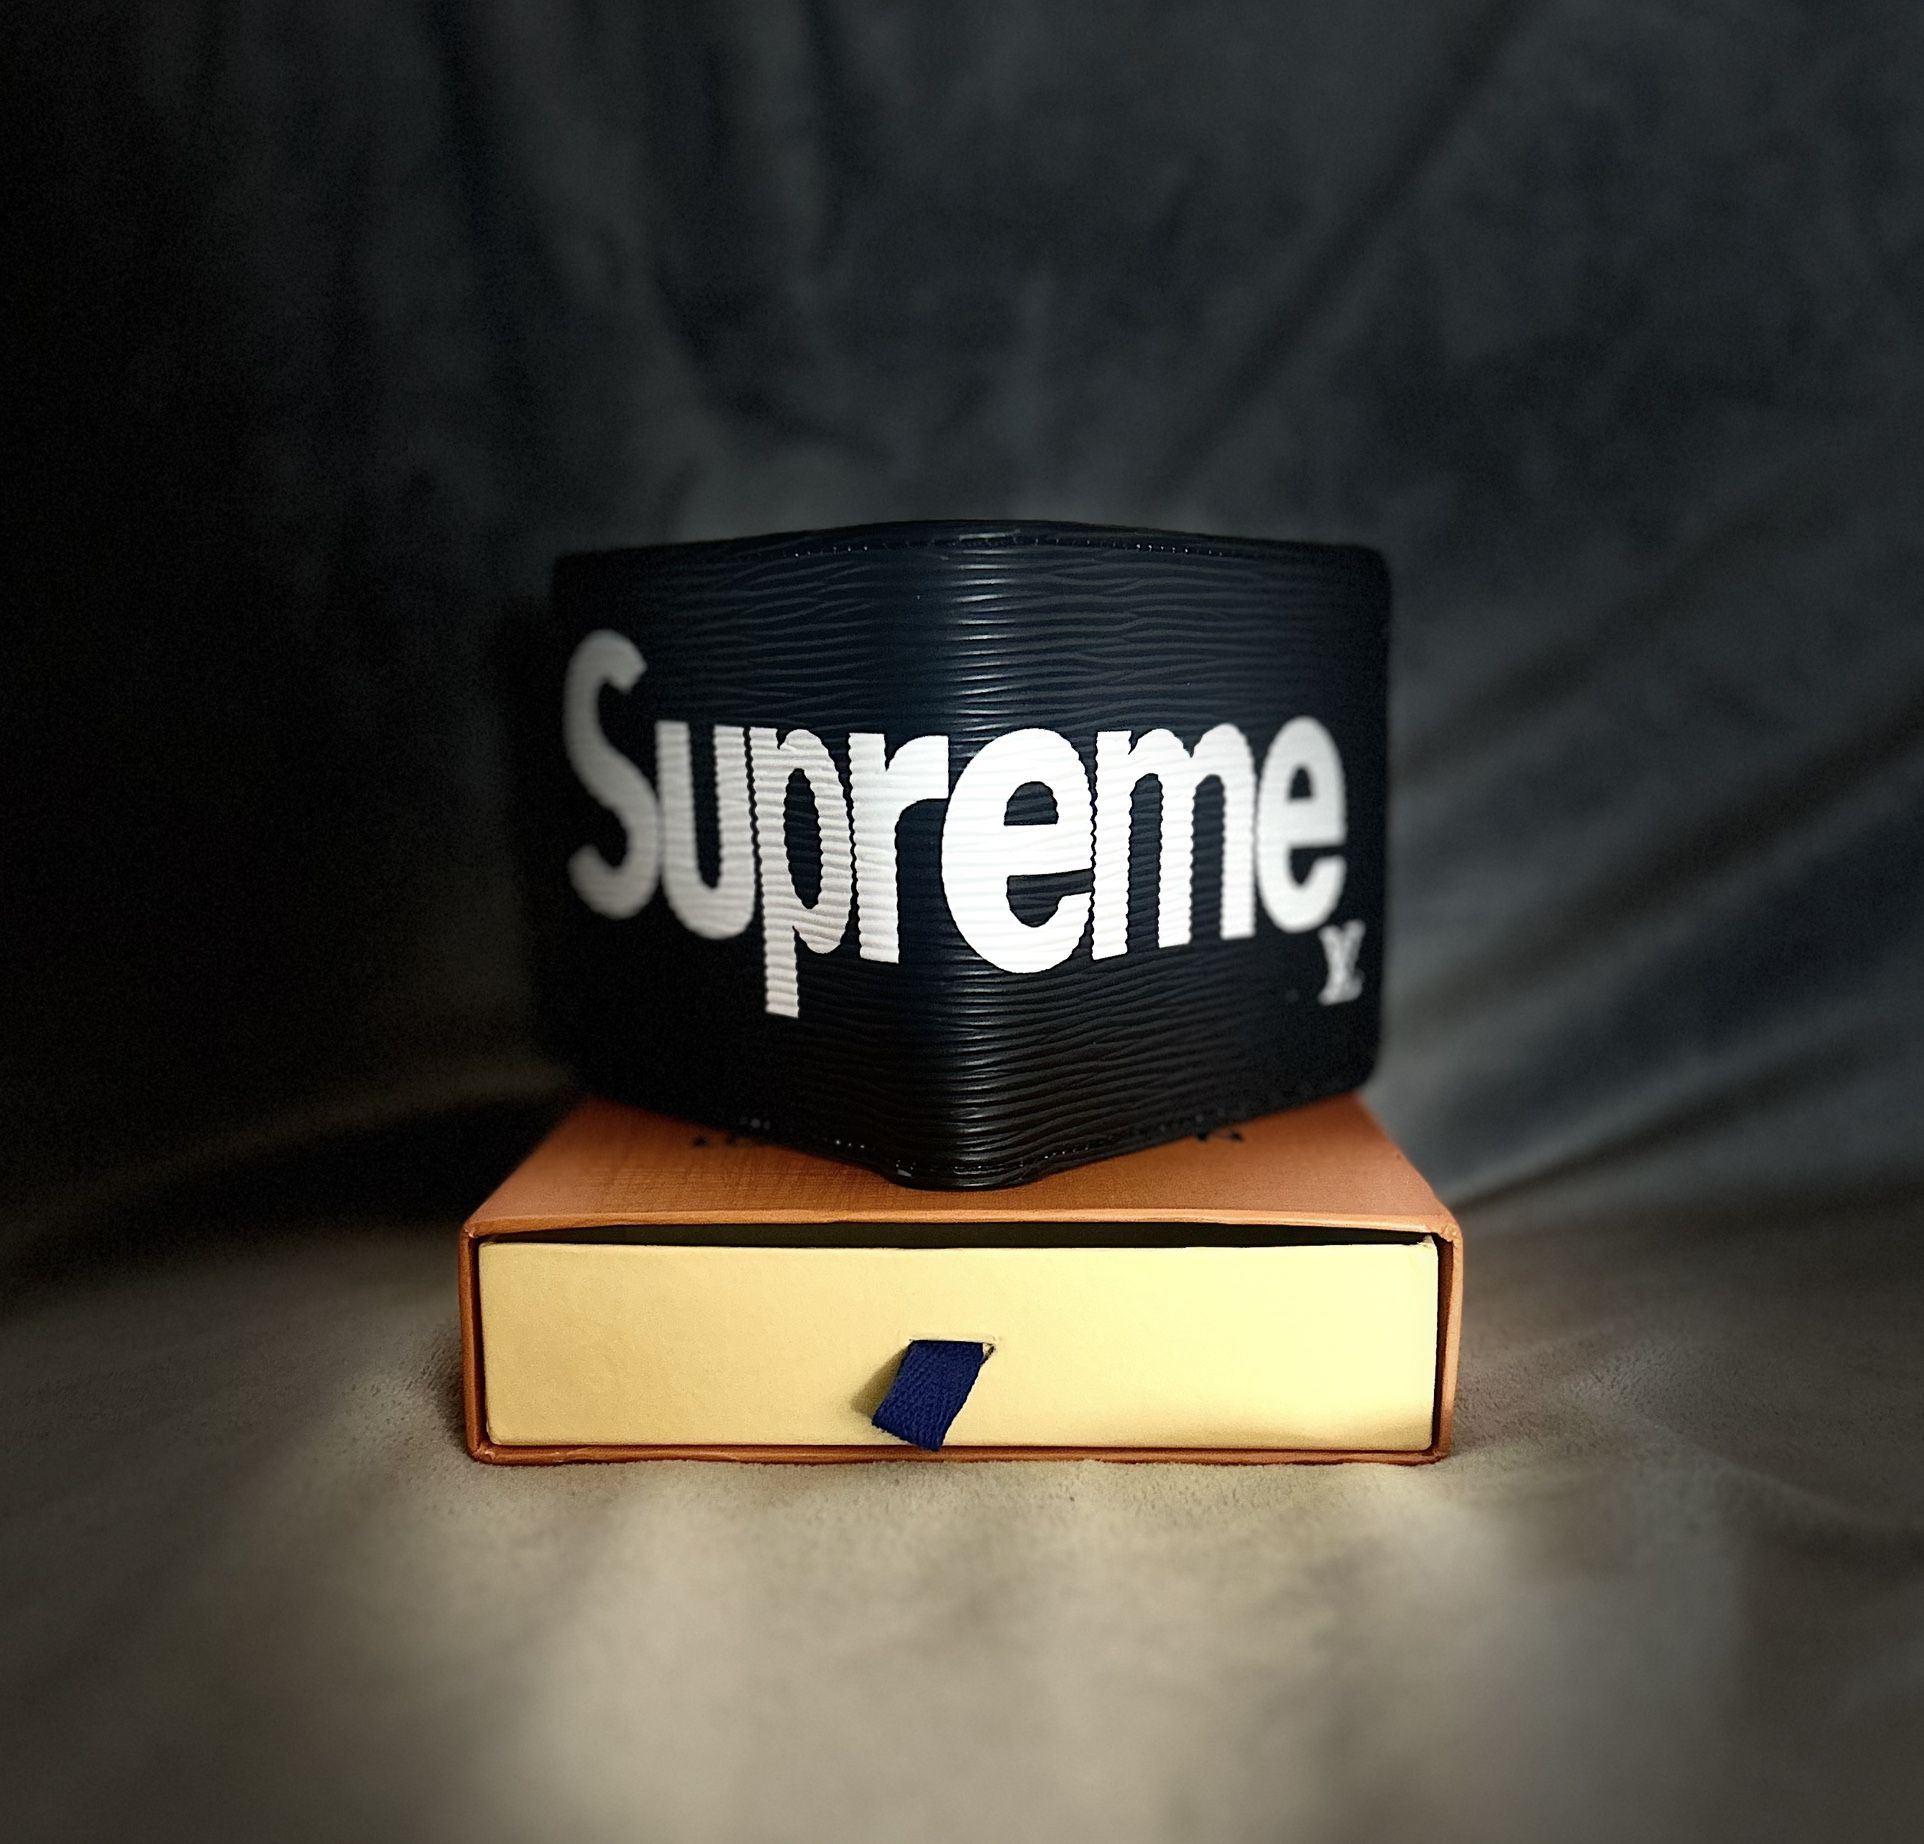 Supreme Wallets 